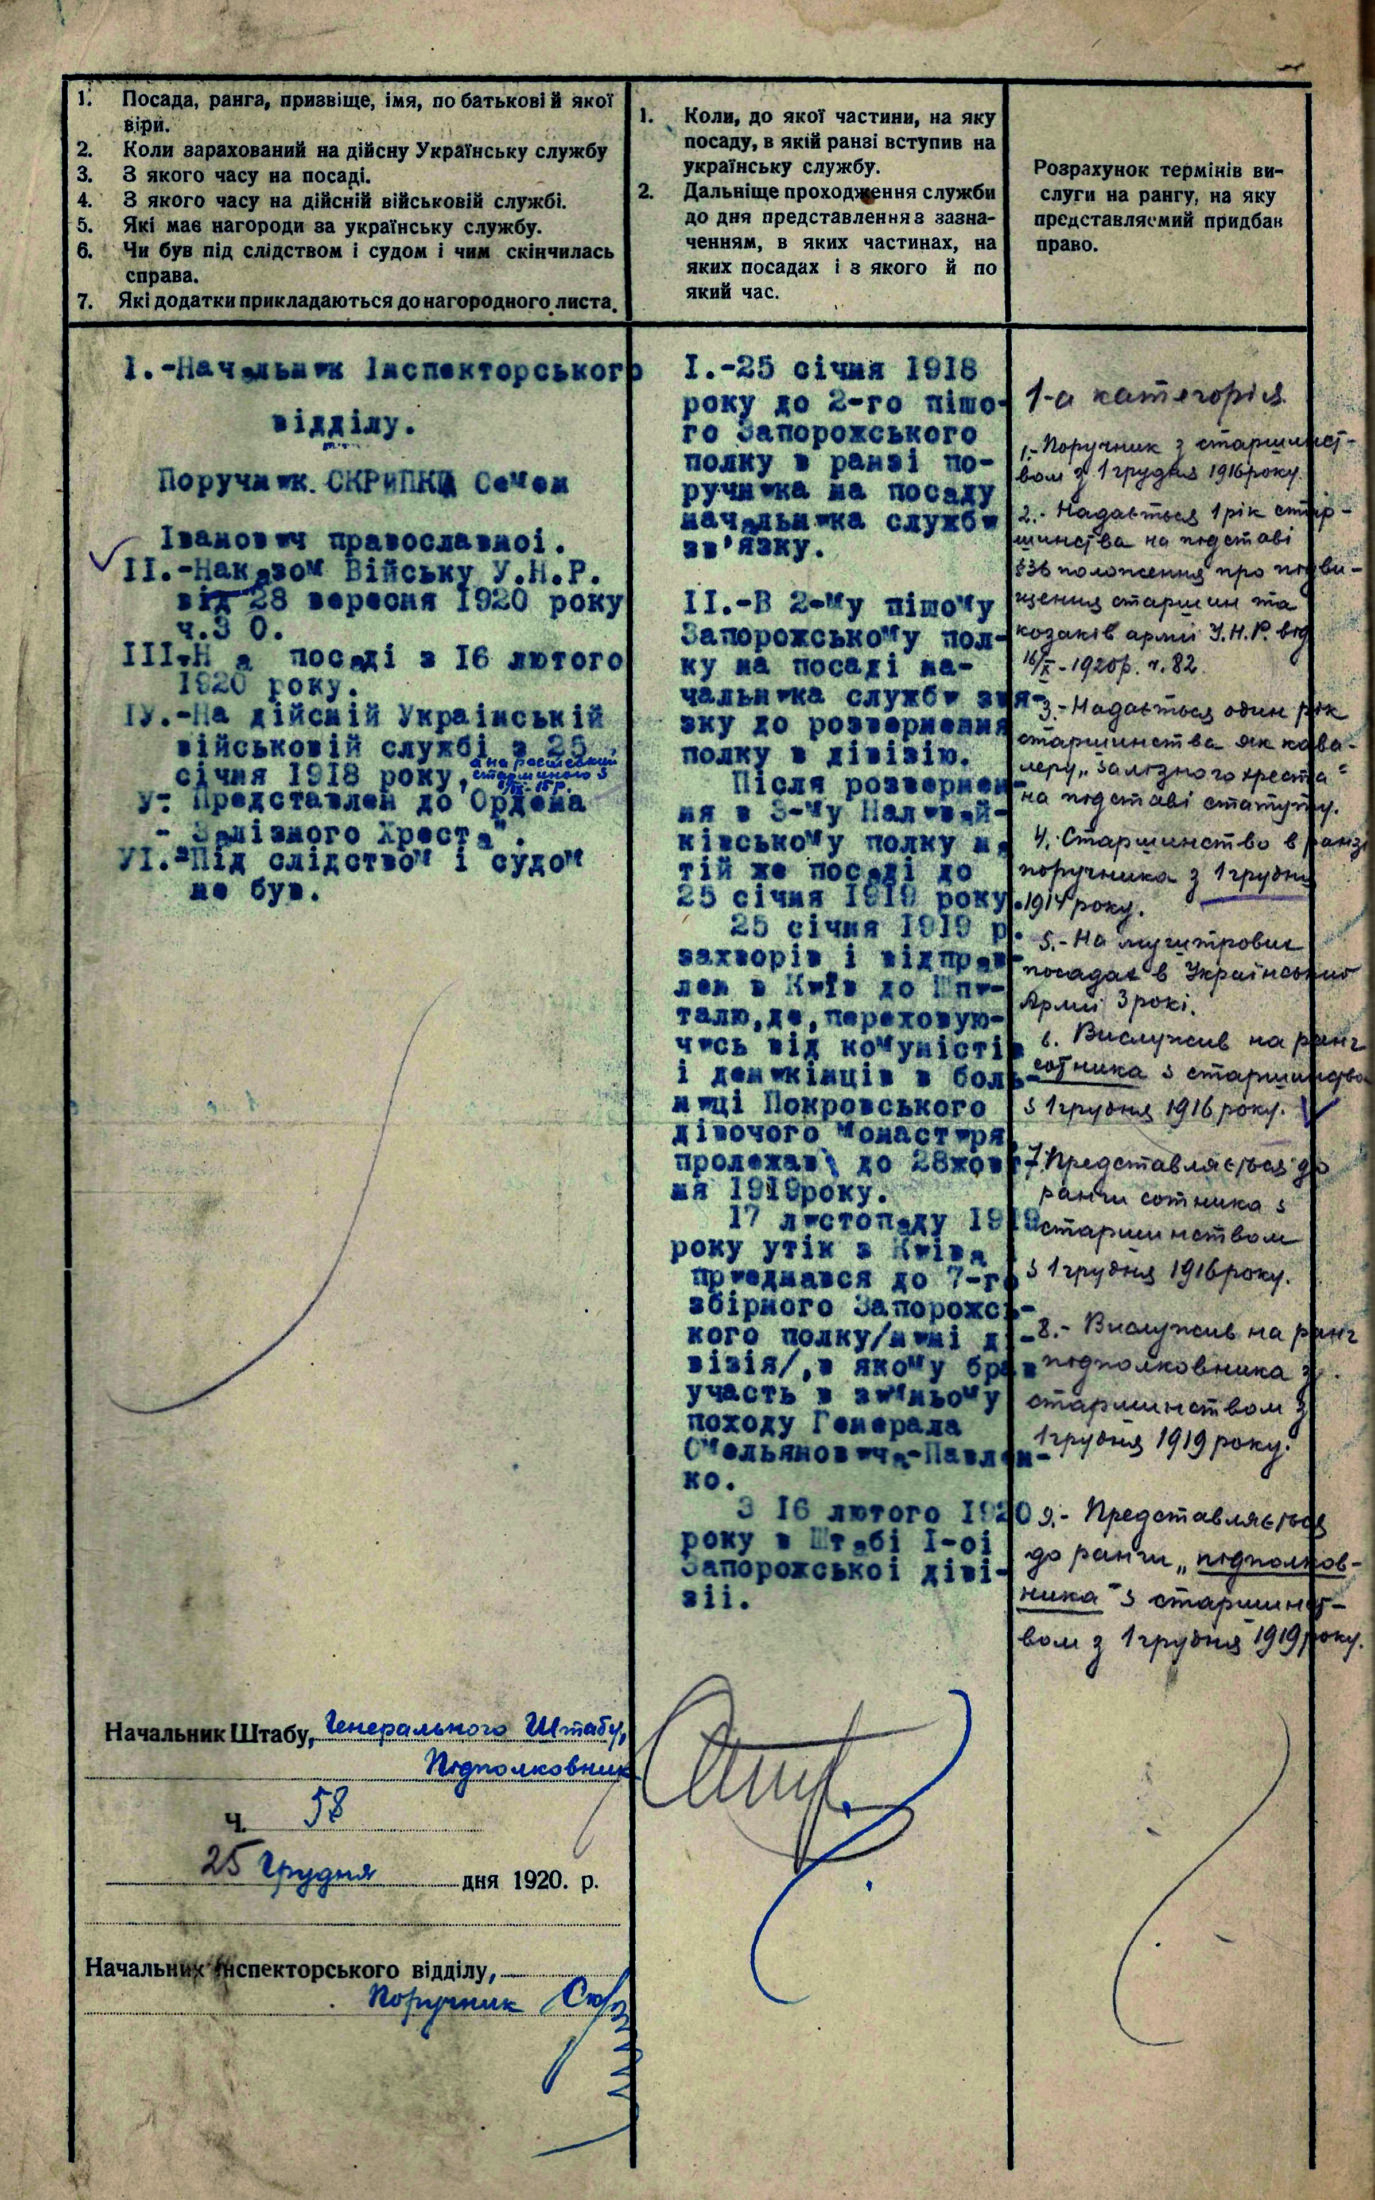 Нагородний лист Штабу І-ої Запорізької стрілецької дивізії на ім’я начальника інспекторського відділу Семена Скрипки. 18 січня 1921 р.